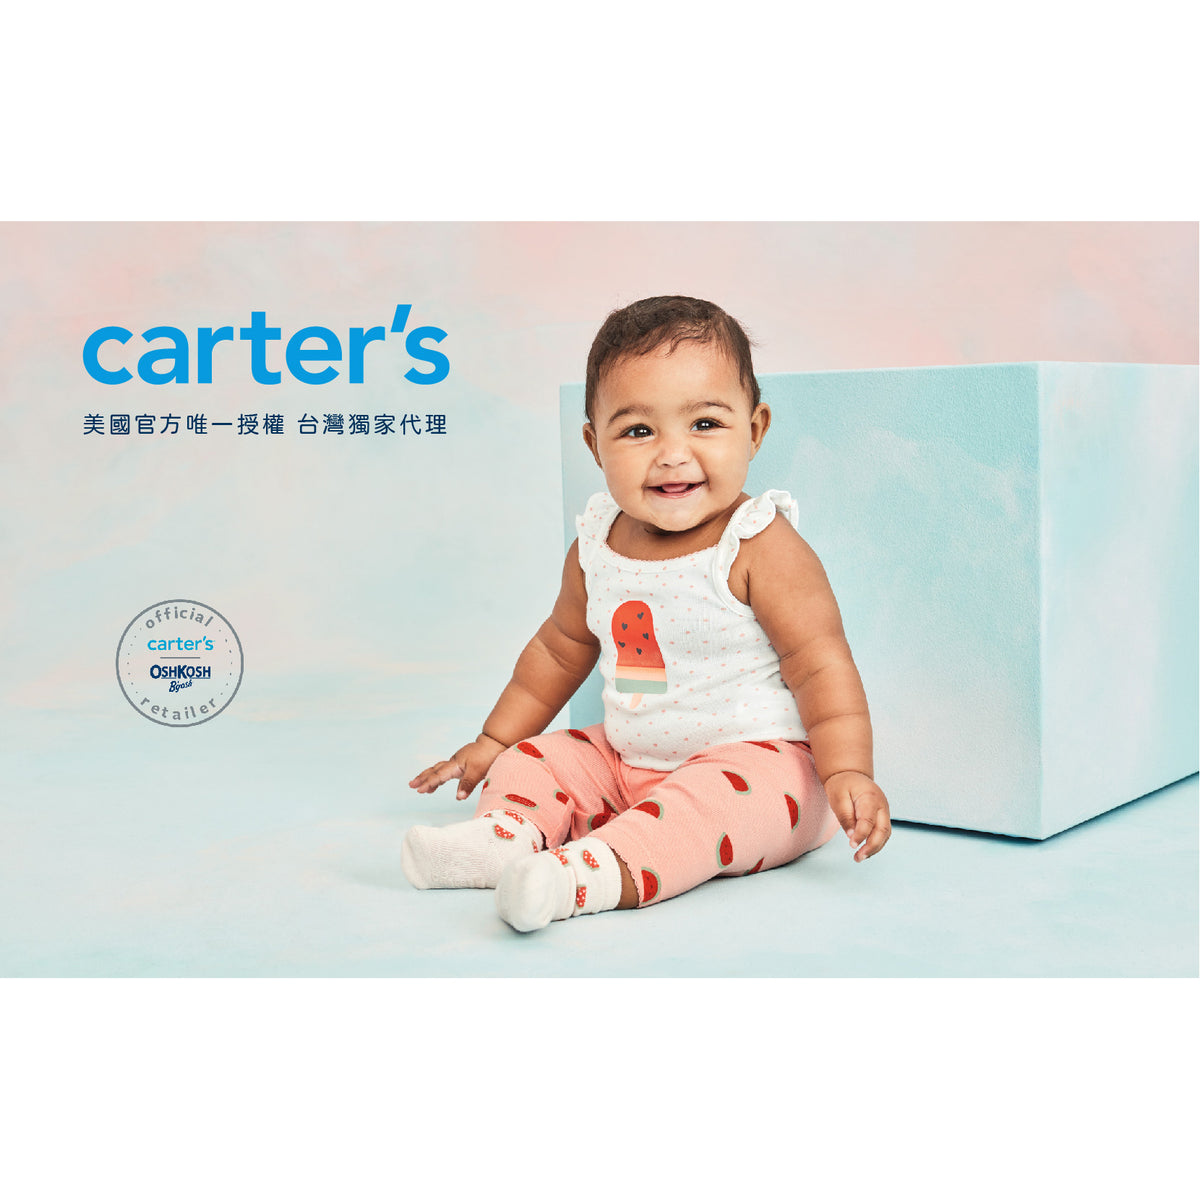 Carter's 粉嫩紫羅蘭洋裝(6M-24M)